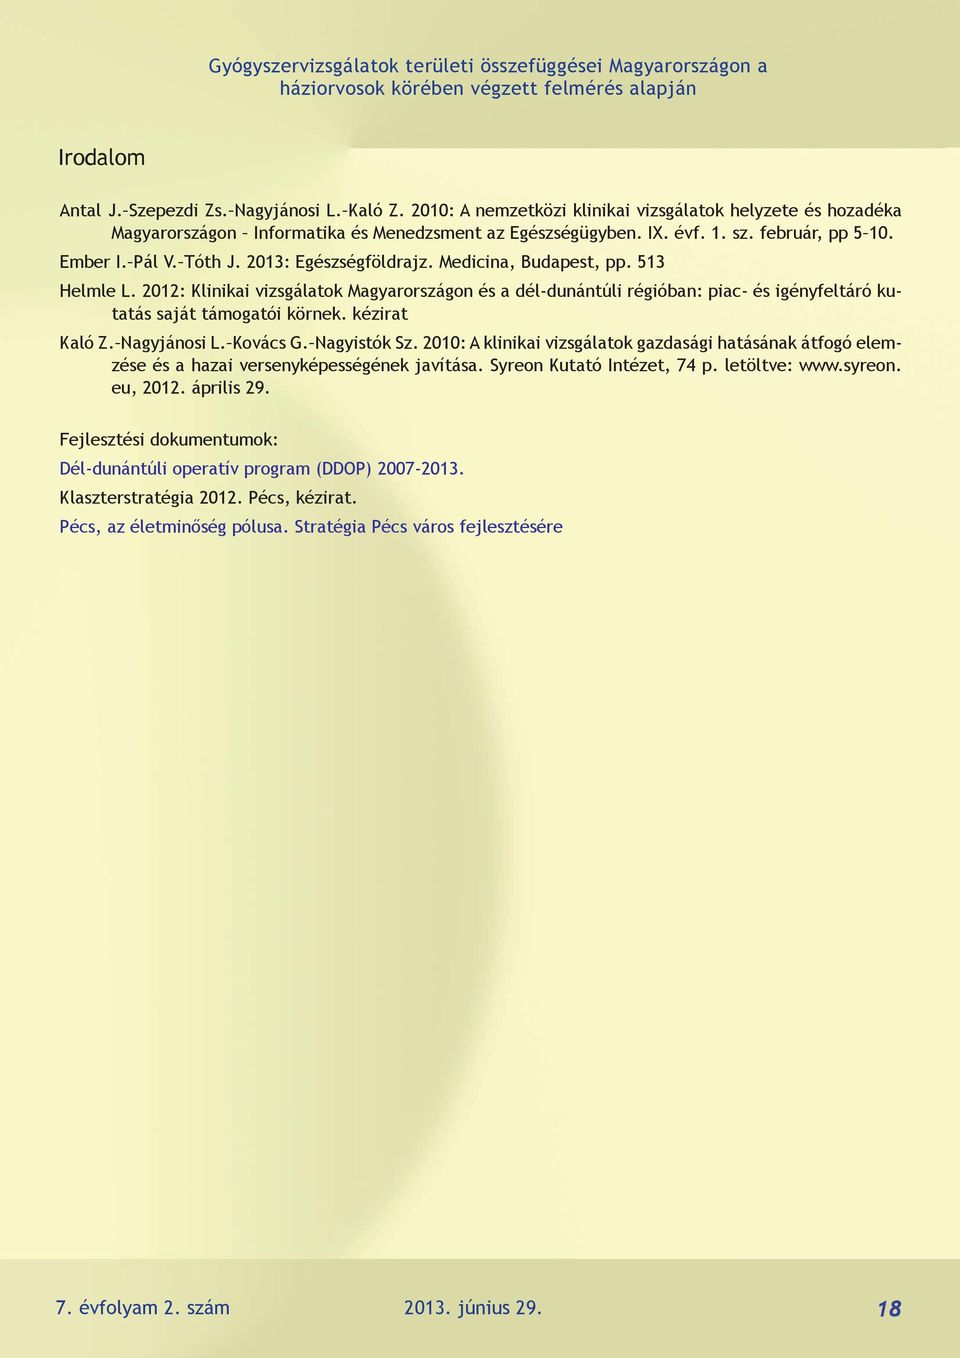 2013: Egészségföldrajz. Medicina, Budapest, pp. 513 Helmle L. 2012: Klinikai vizsgálatok Magyarországon és a dél-dunántúli régióban: piac- és igényfeltáró kutatás saját támogatói körnek.